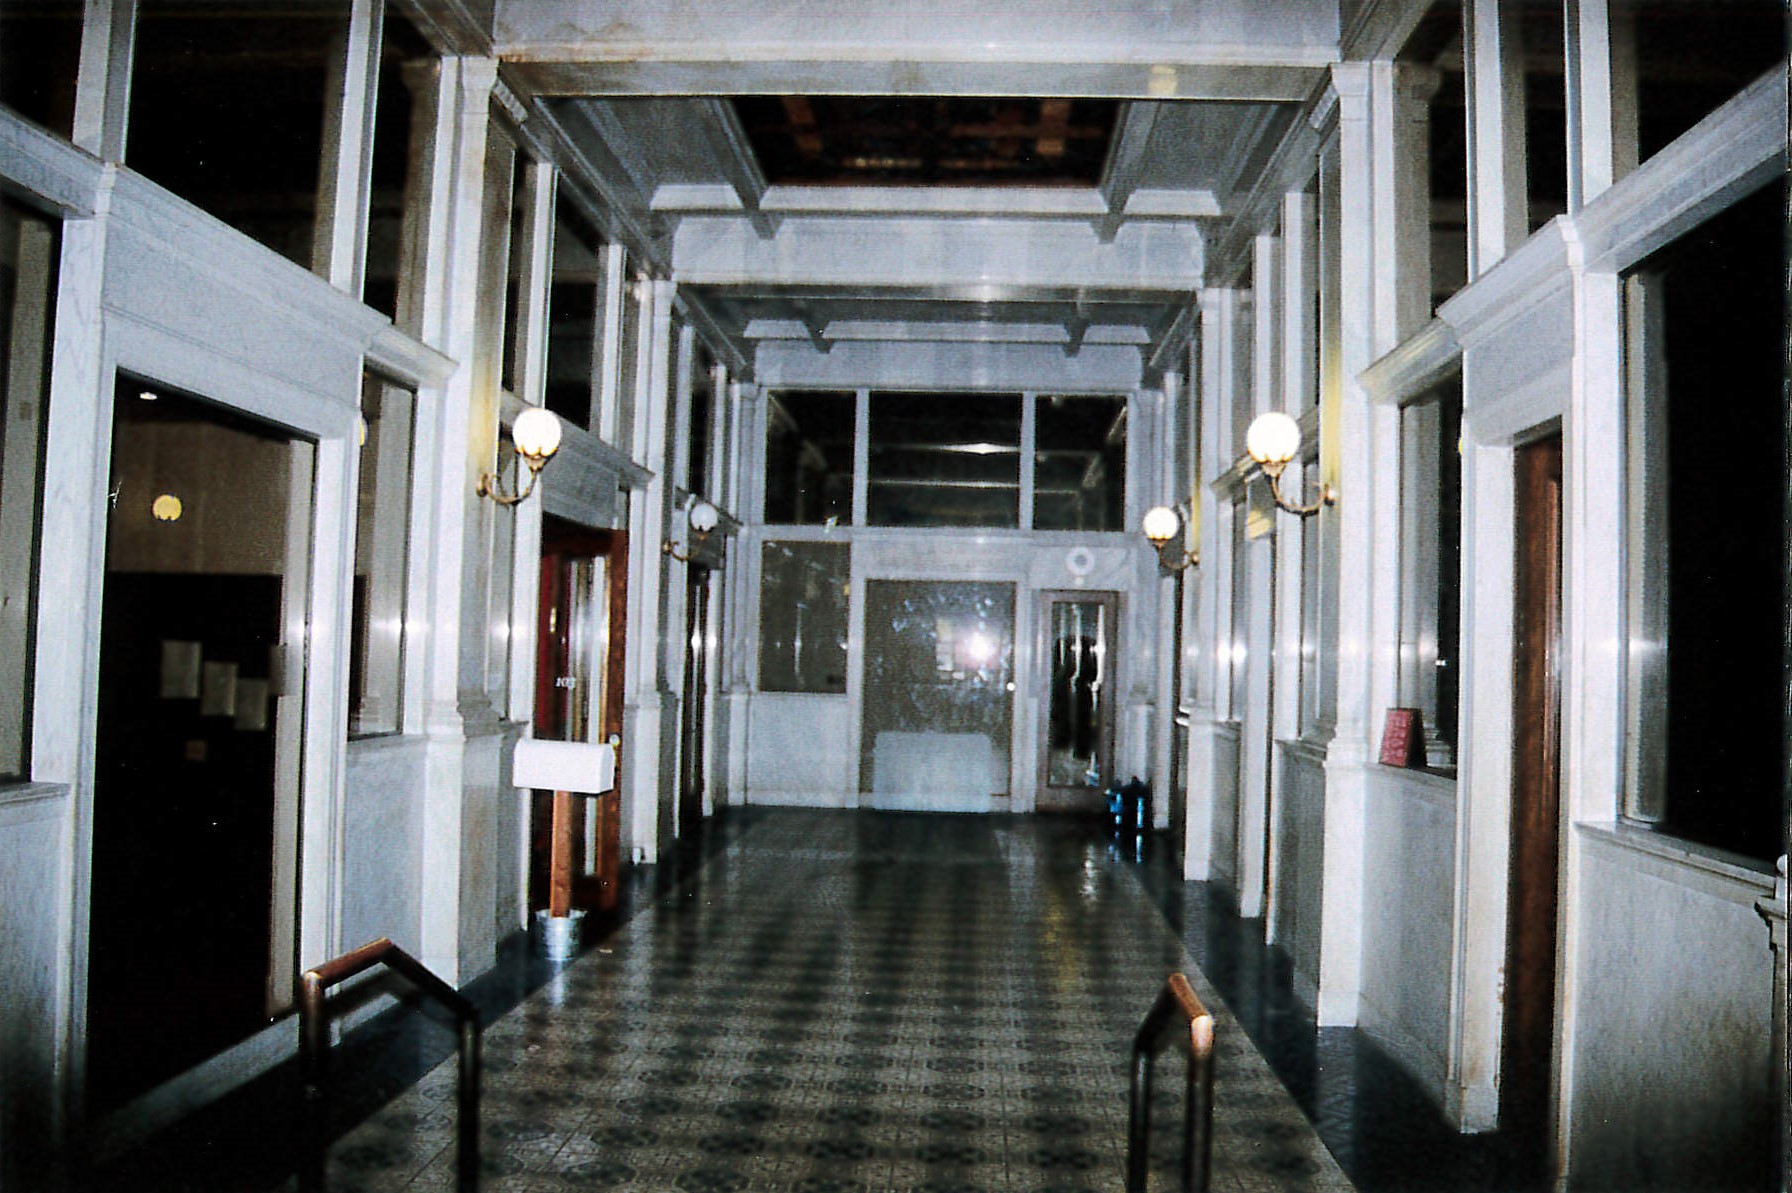 First floor lobby corridor